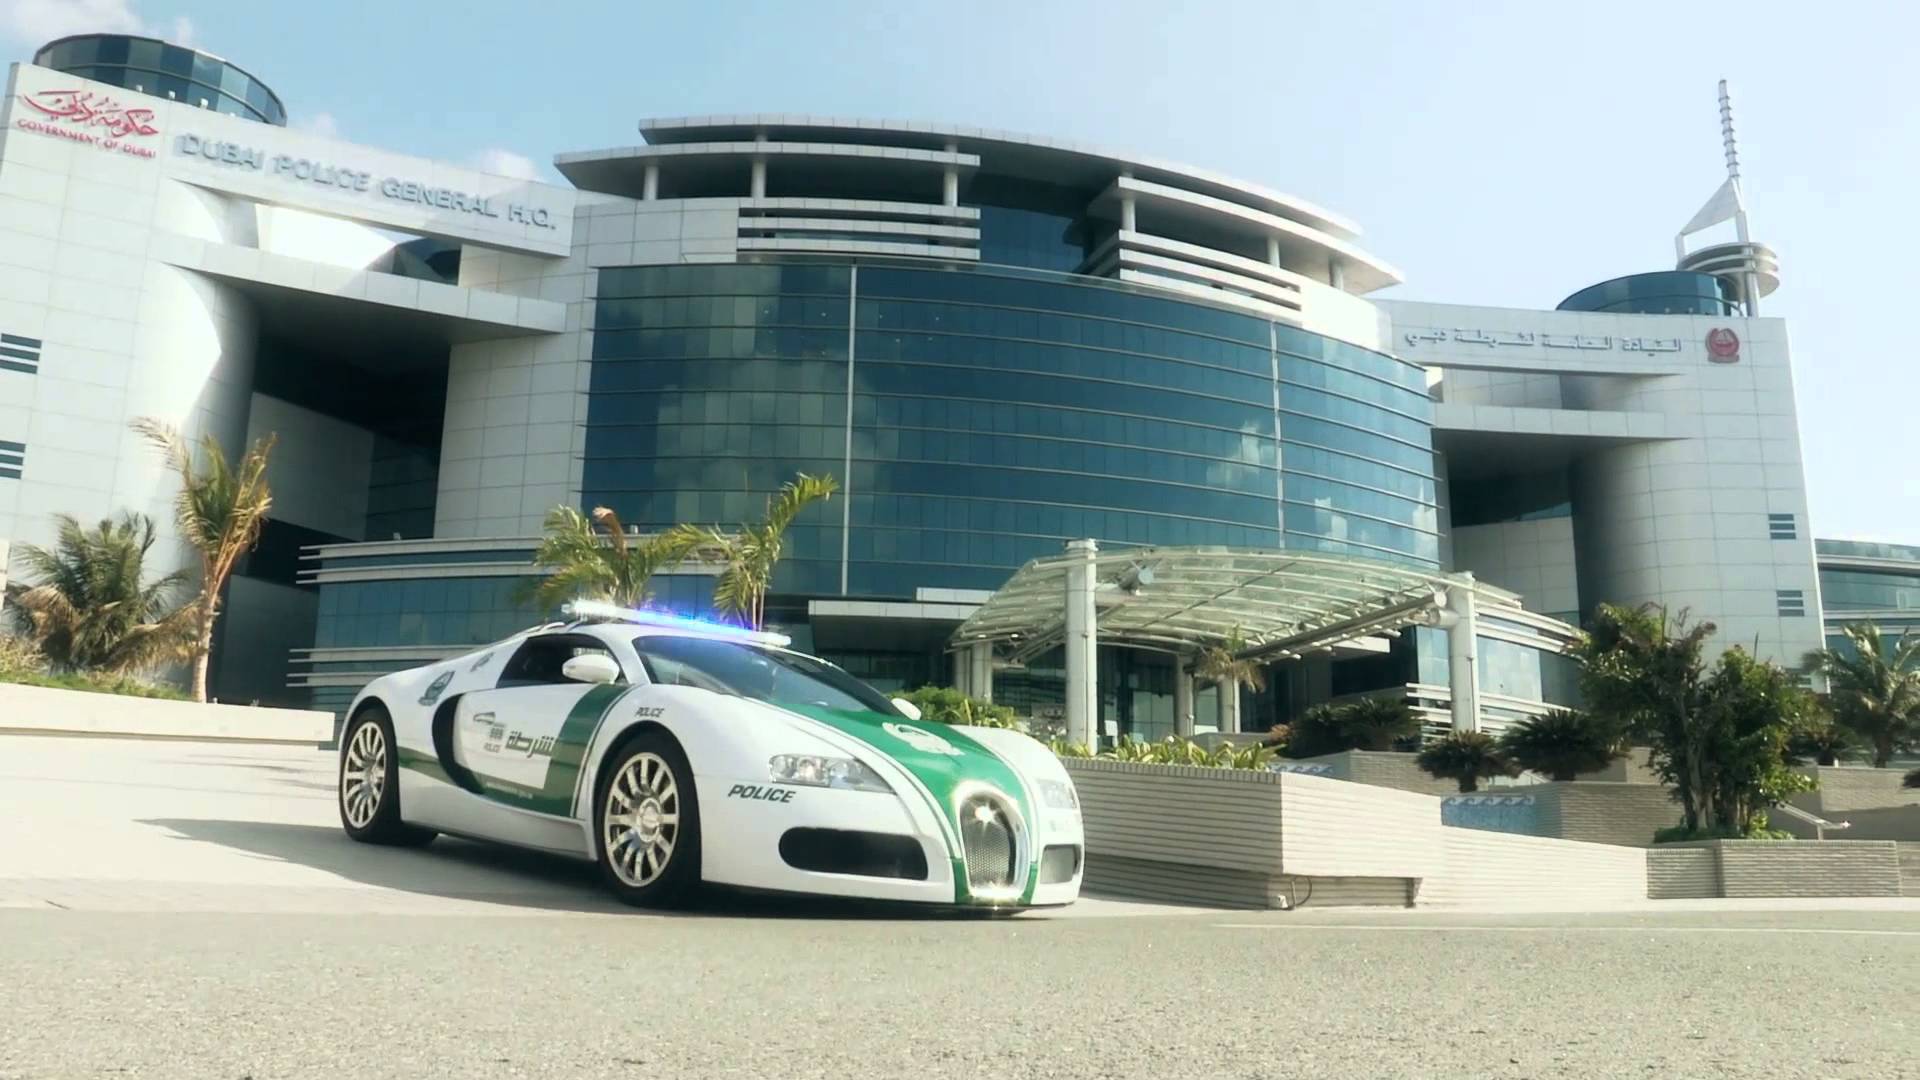 The Dubai Police and its Bugatti Veyron° CarPower360°